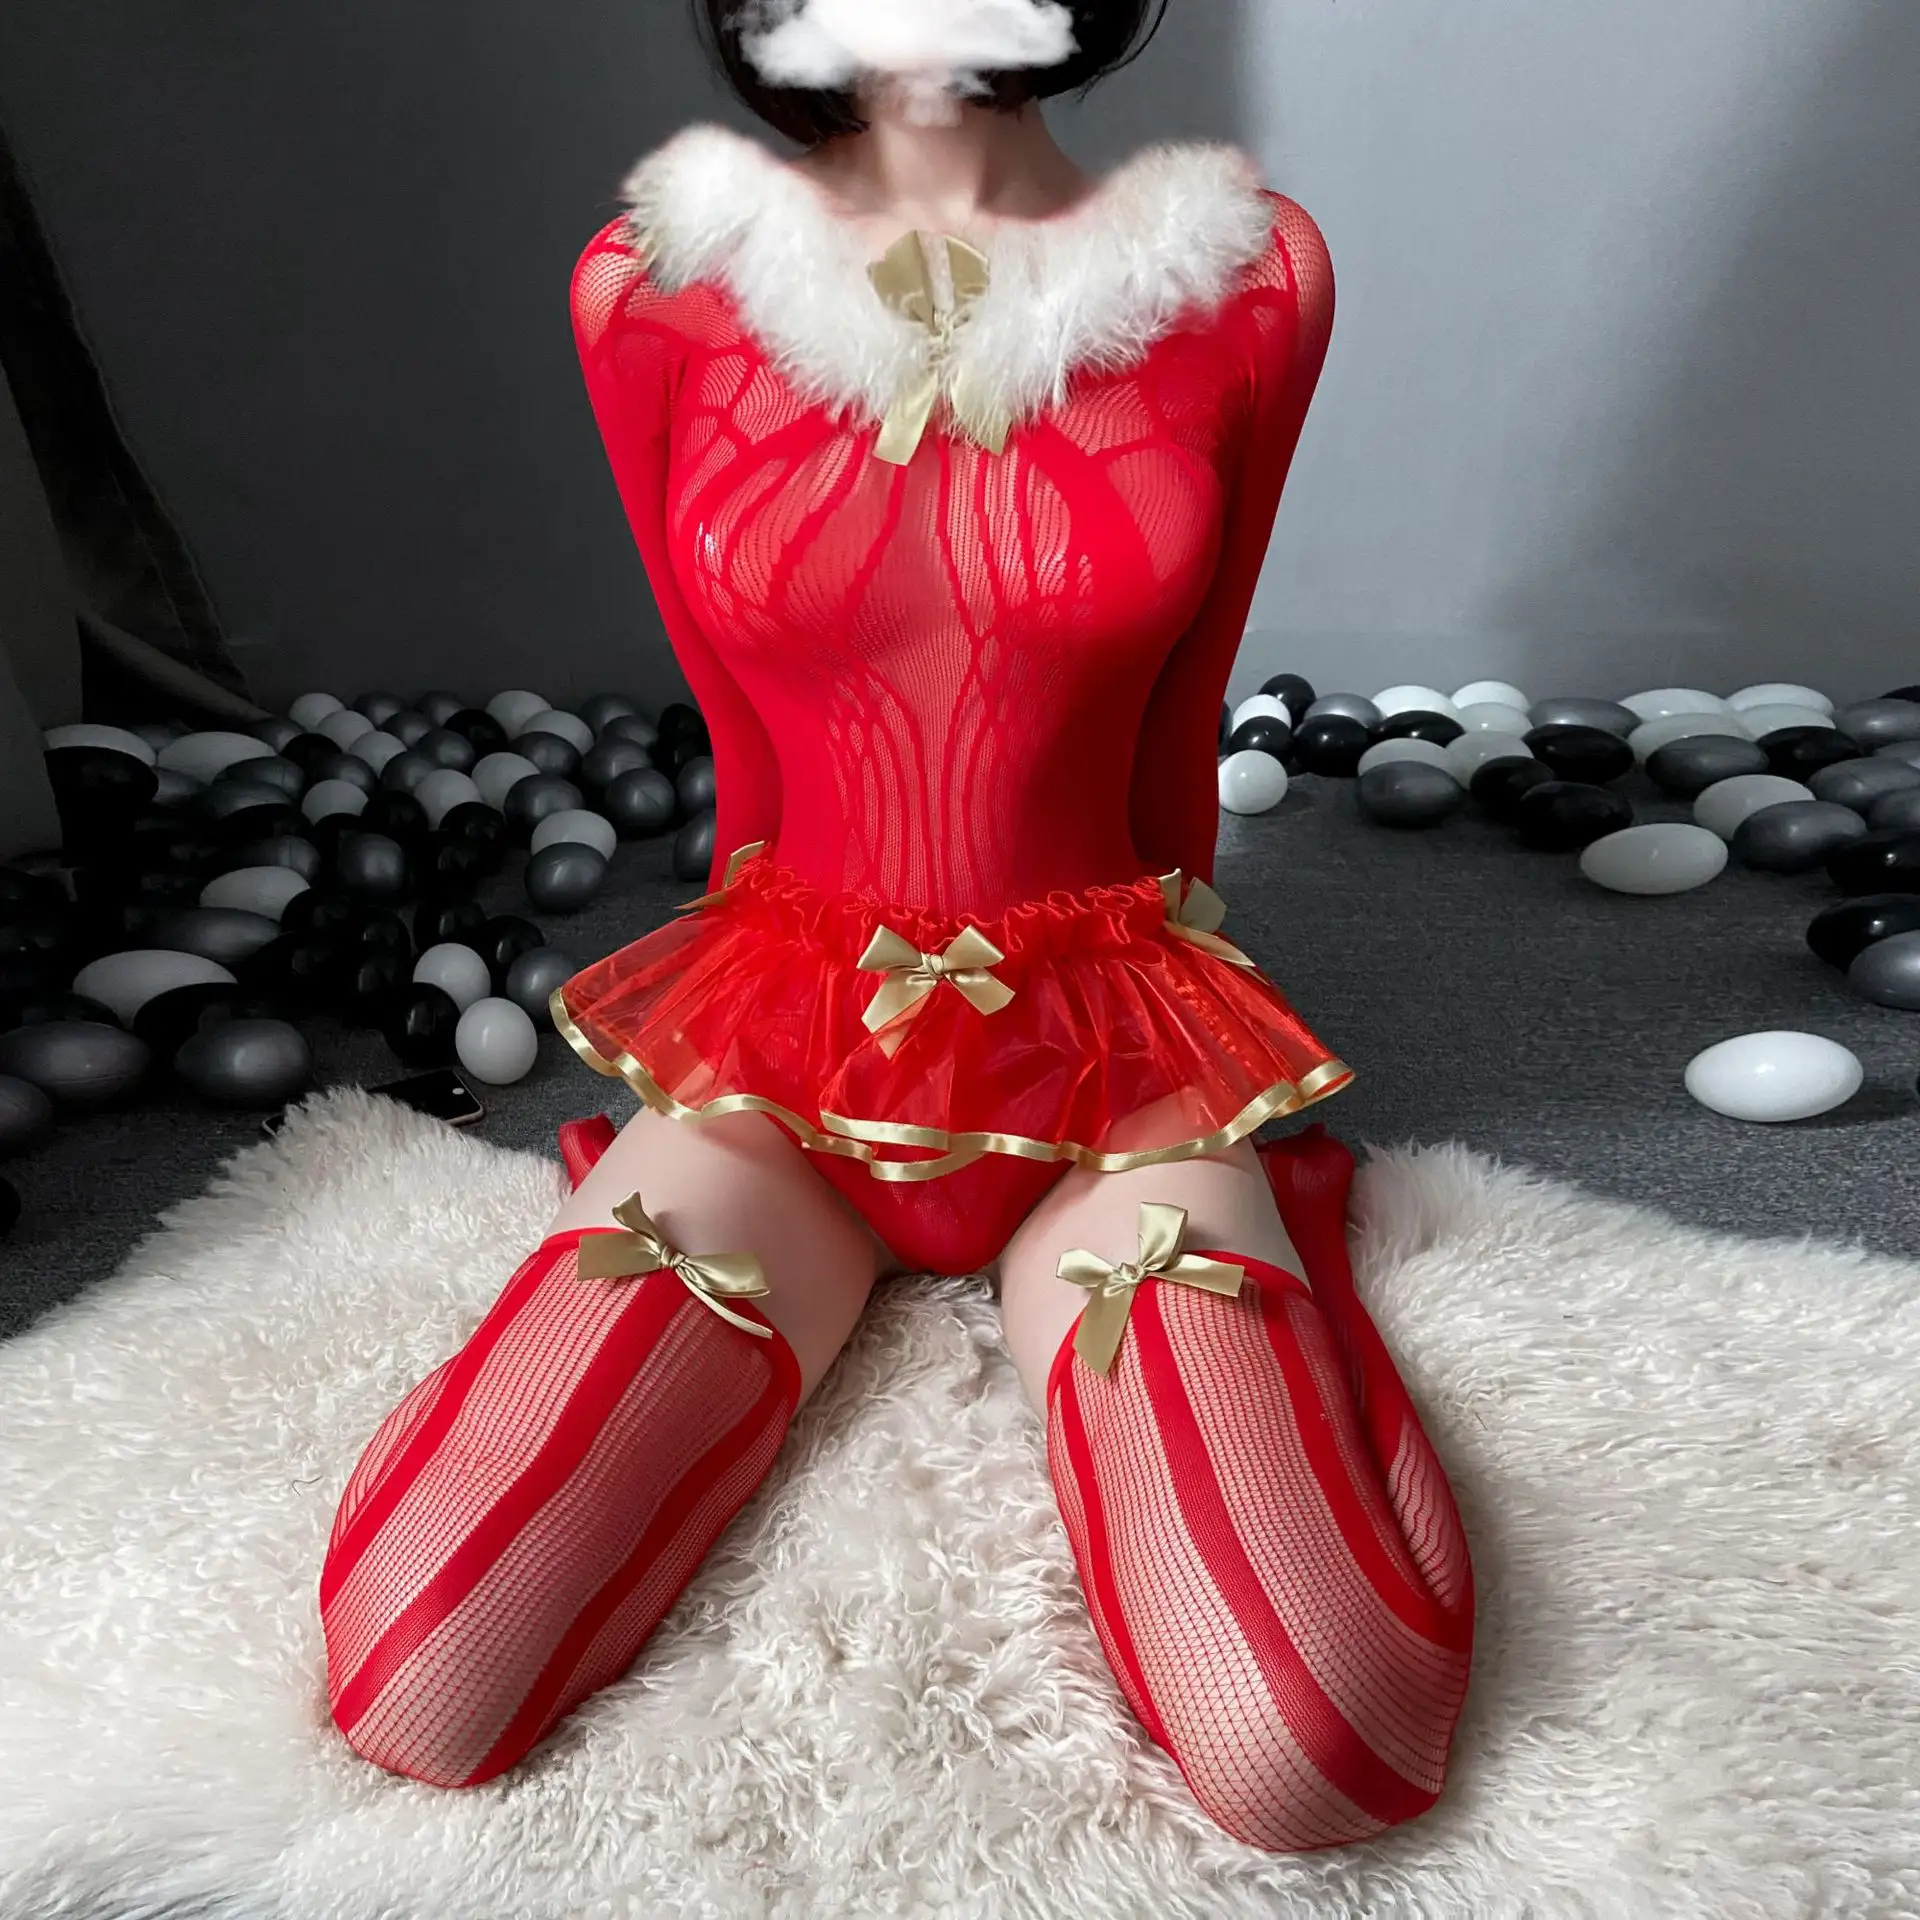 크리스마스 잠옷 섹시한 란제리 여성의 섹시한 메쉬 시스루 유혹 교정기 나이트 스커트 정장 레드 세트 크리스마스 드레스